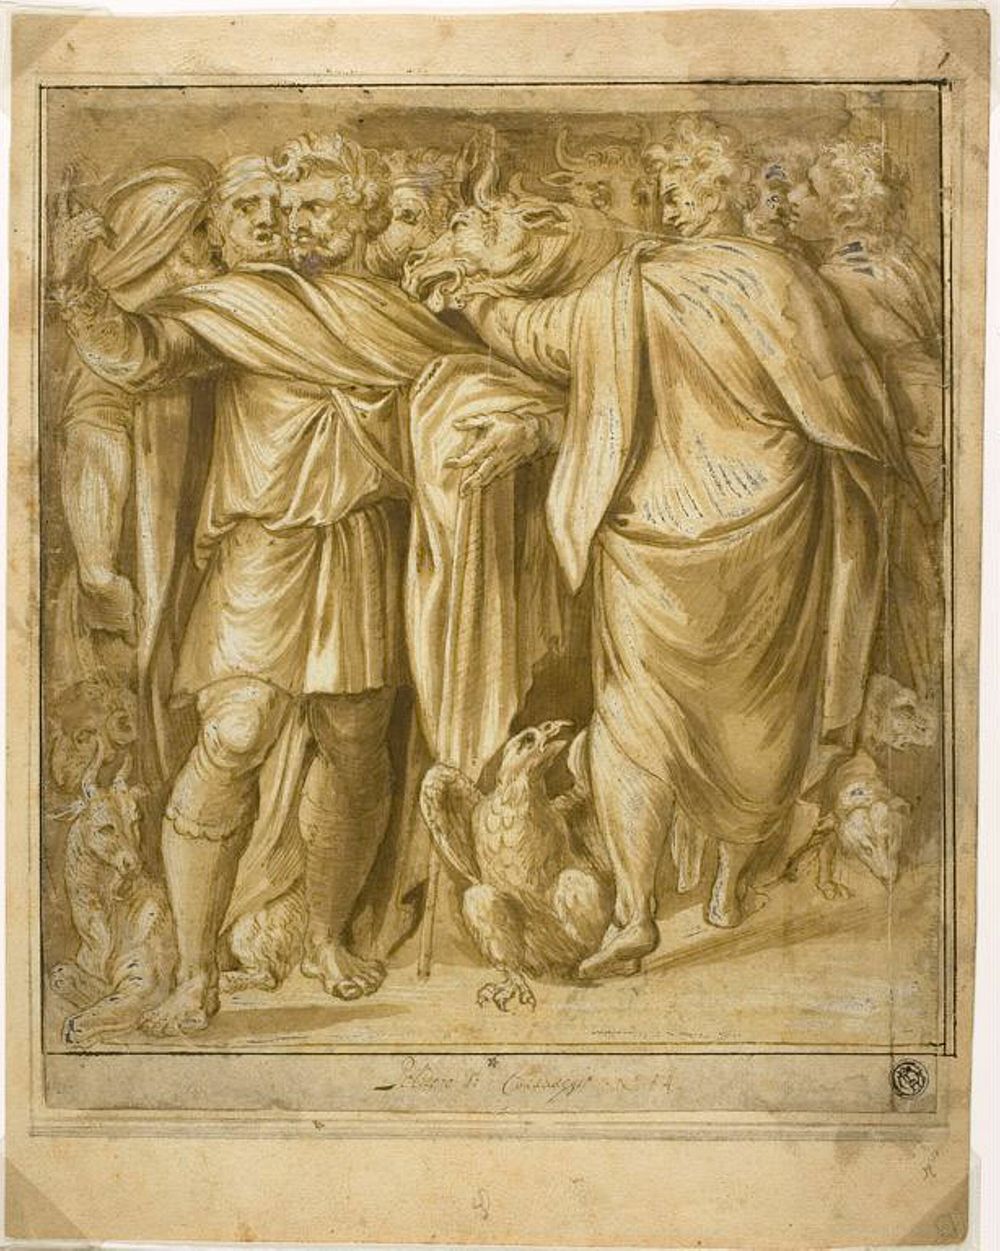 Sacrificial Scene by Polidoro da Caravaggio